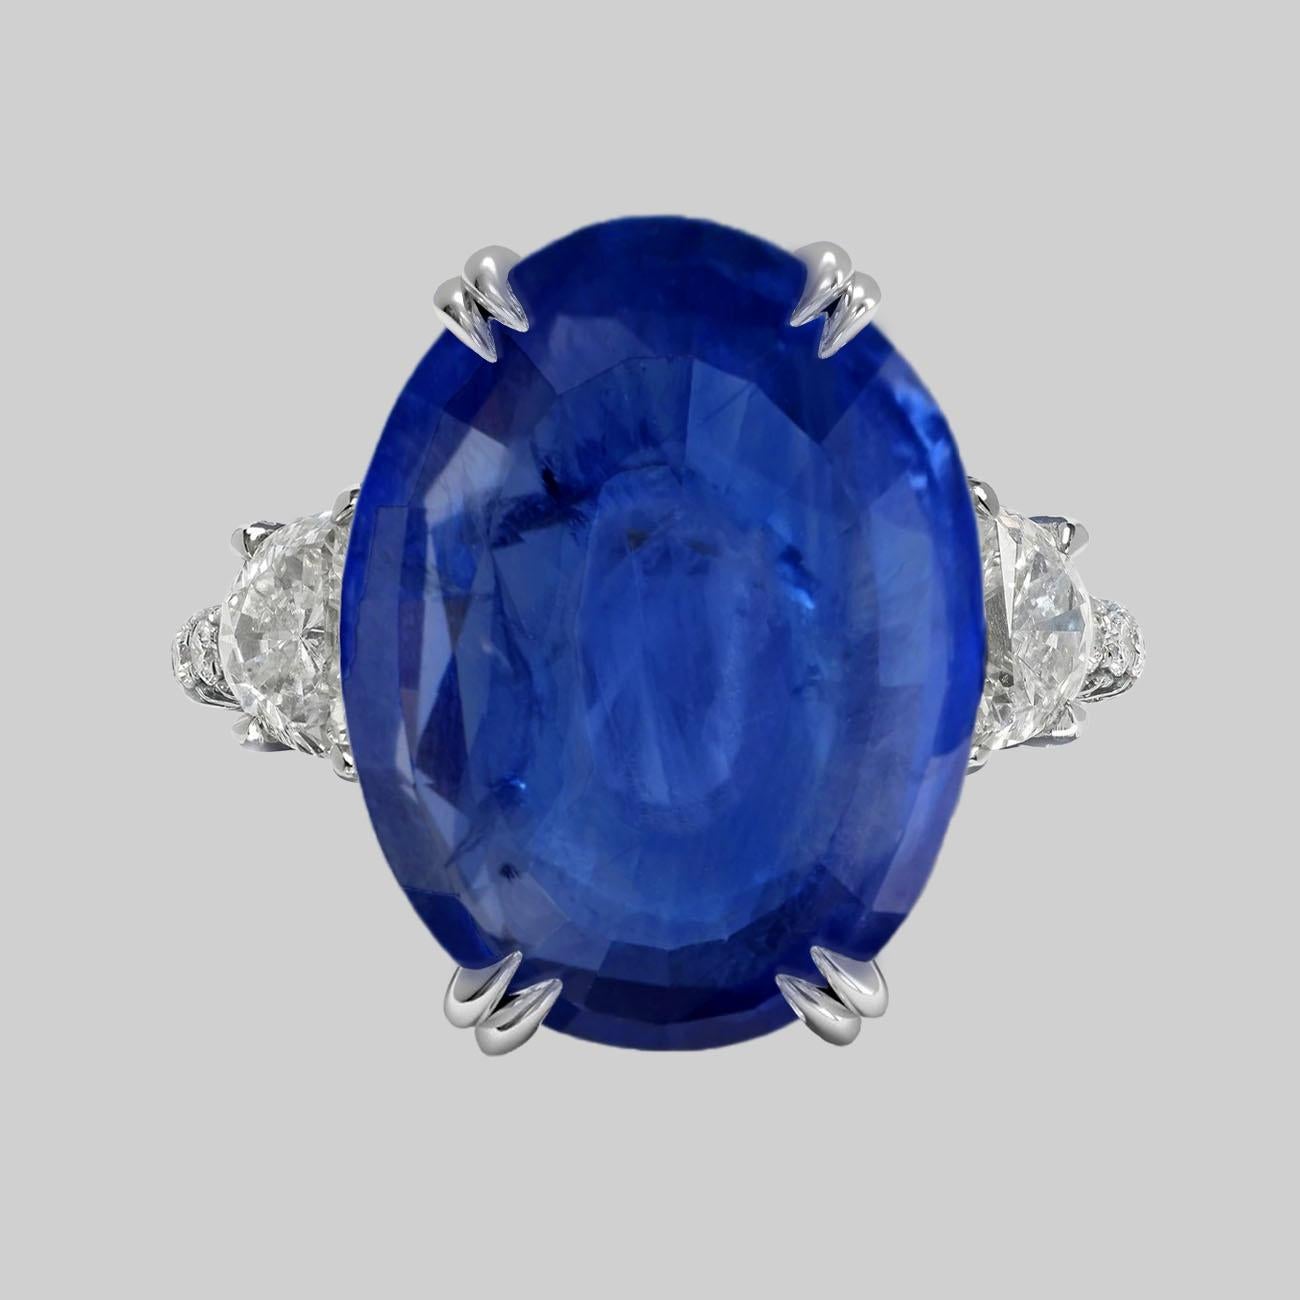 8 carat blue sapphire price